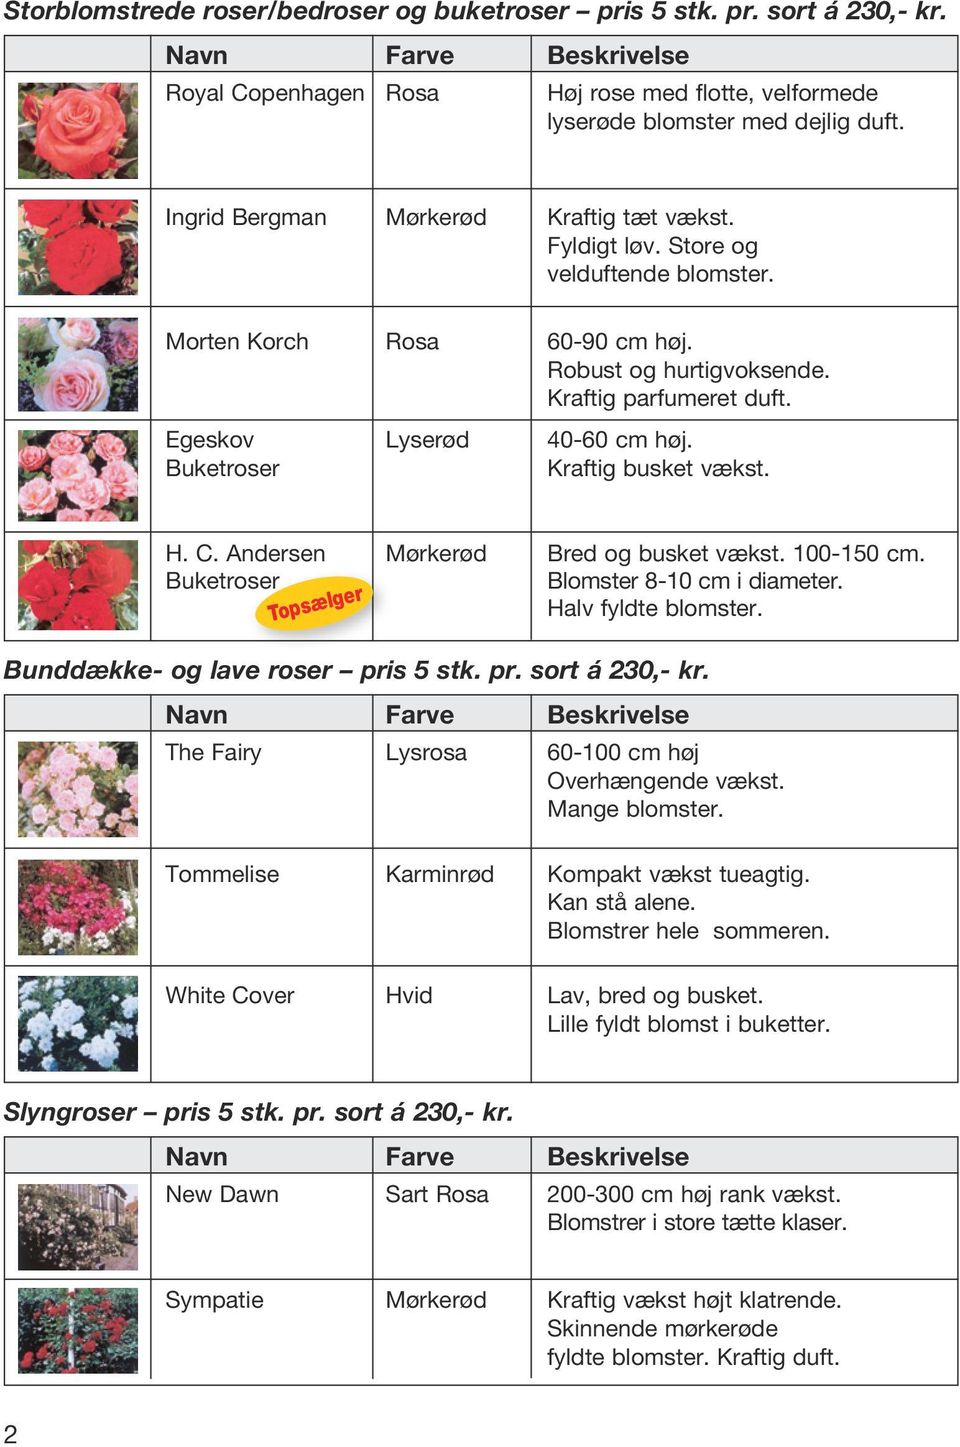 Buketroser Kraftig busket vækst. H. C. Andersen Mørkerød Bred og busket vækst. 100-150 cm. Buketroser Blomster 8-10 cm i diameter. Halv fyldte blomster. Bunddække- og lave roser pris 5 stk. pr. sort á 230,- kr.